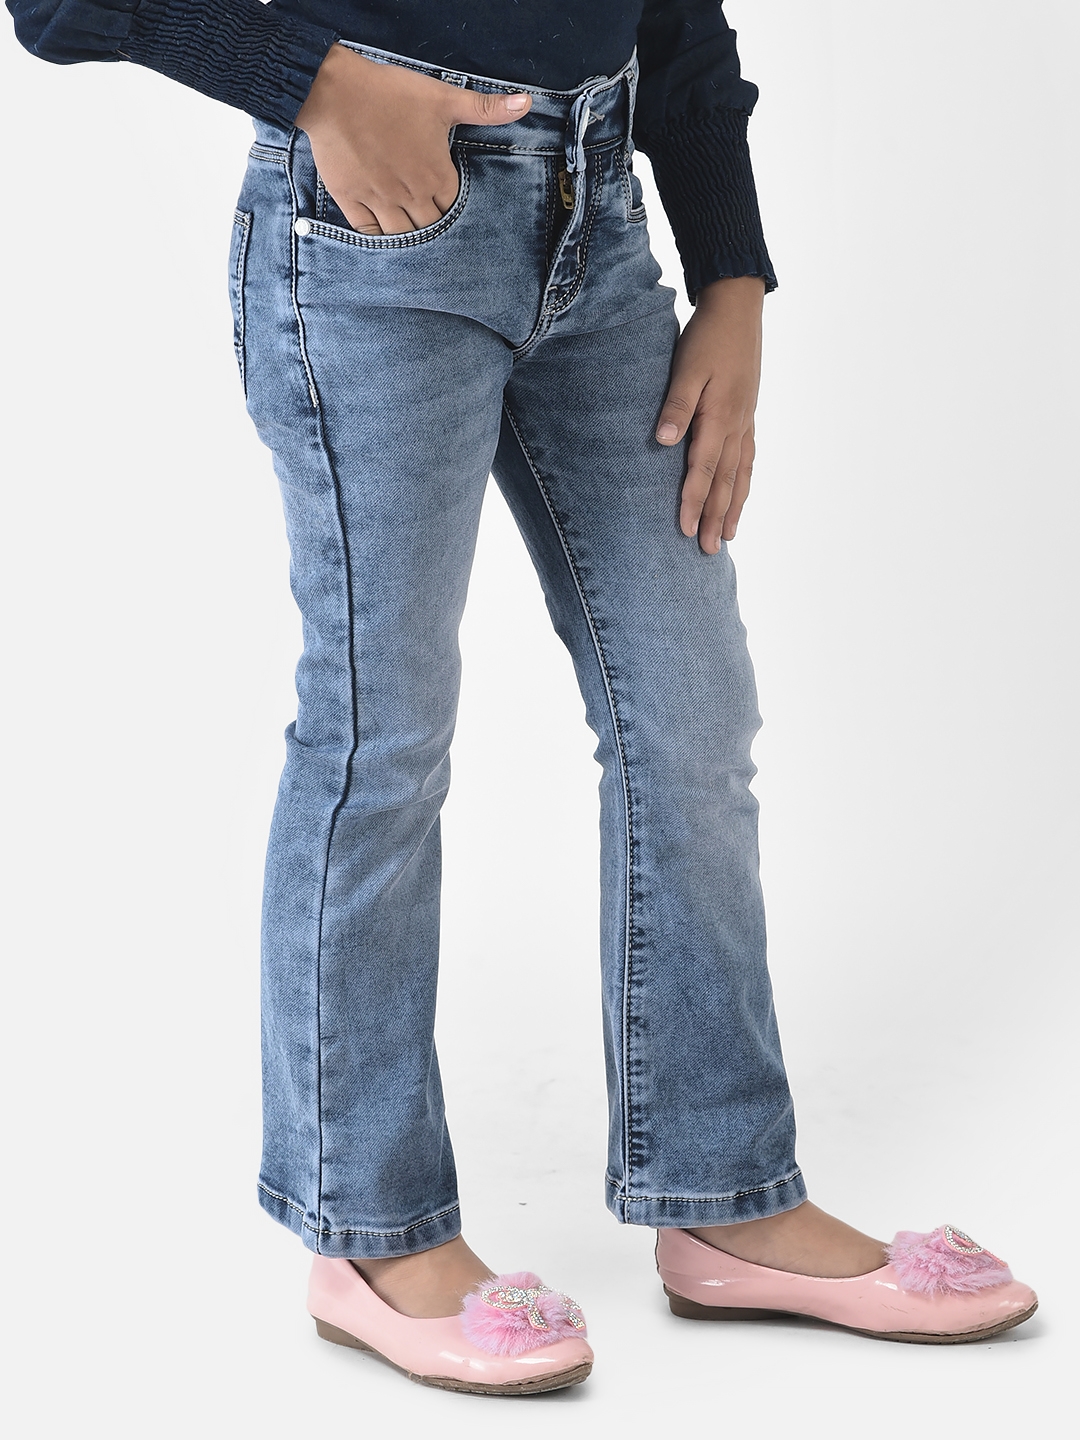 Crimsoune Club | Crimsoune Club Girls Blue Jeans in Boot Cut Fit  3